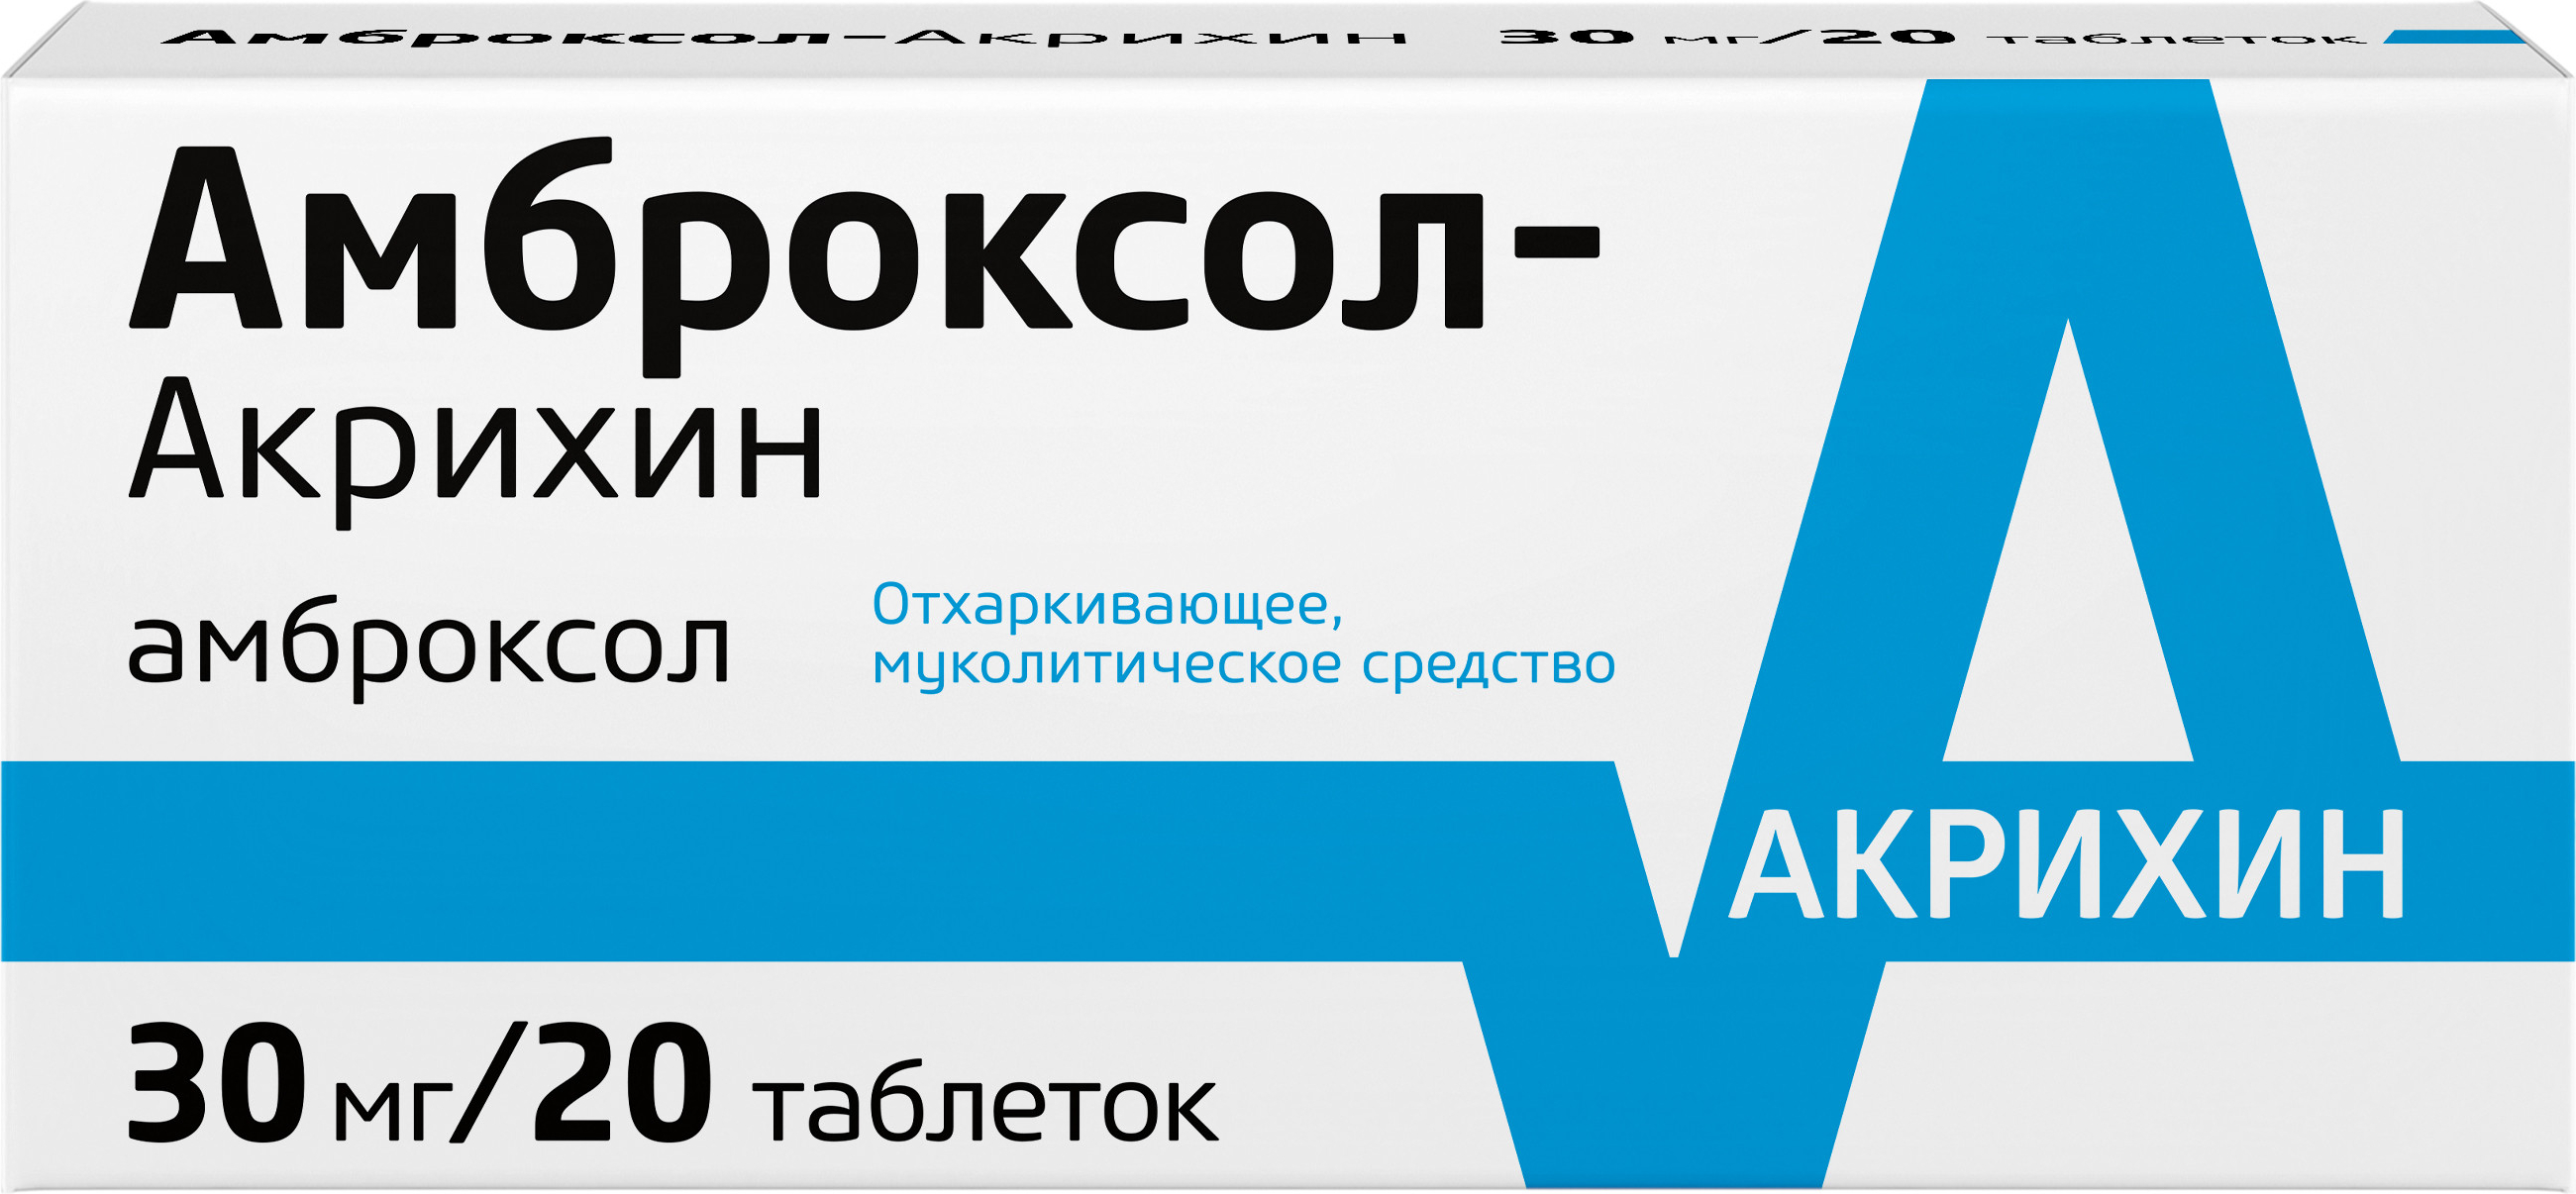 Амброксол-Акрихин, таблетки 30 мг, 20 шт.